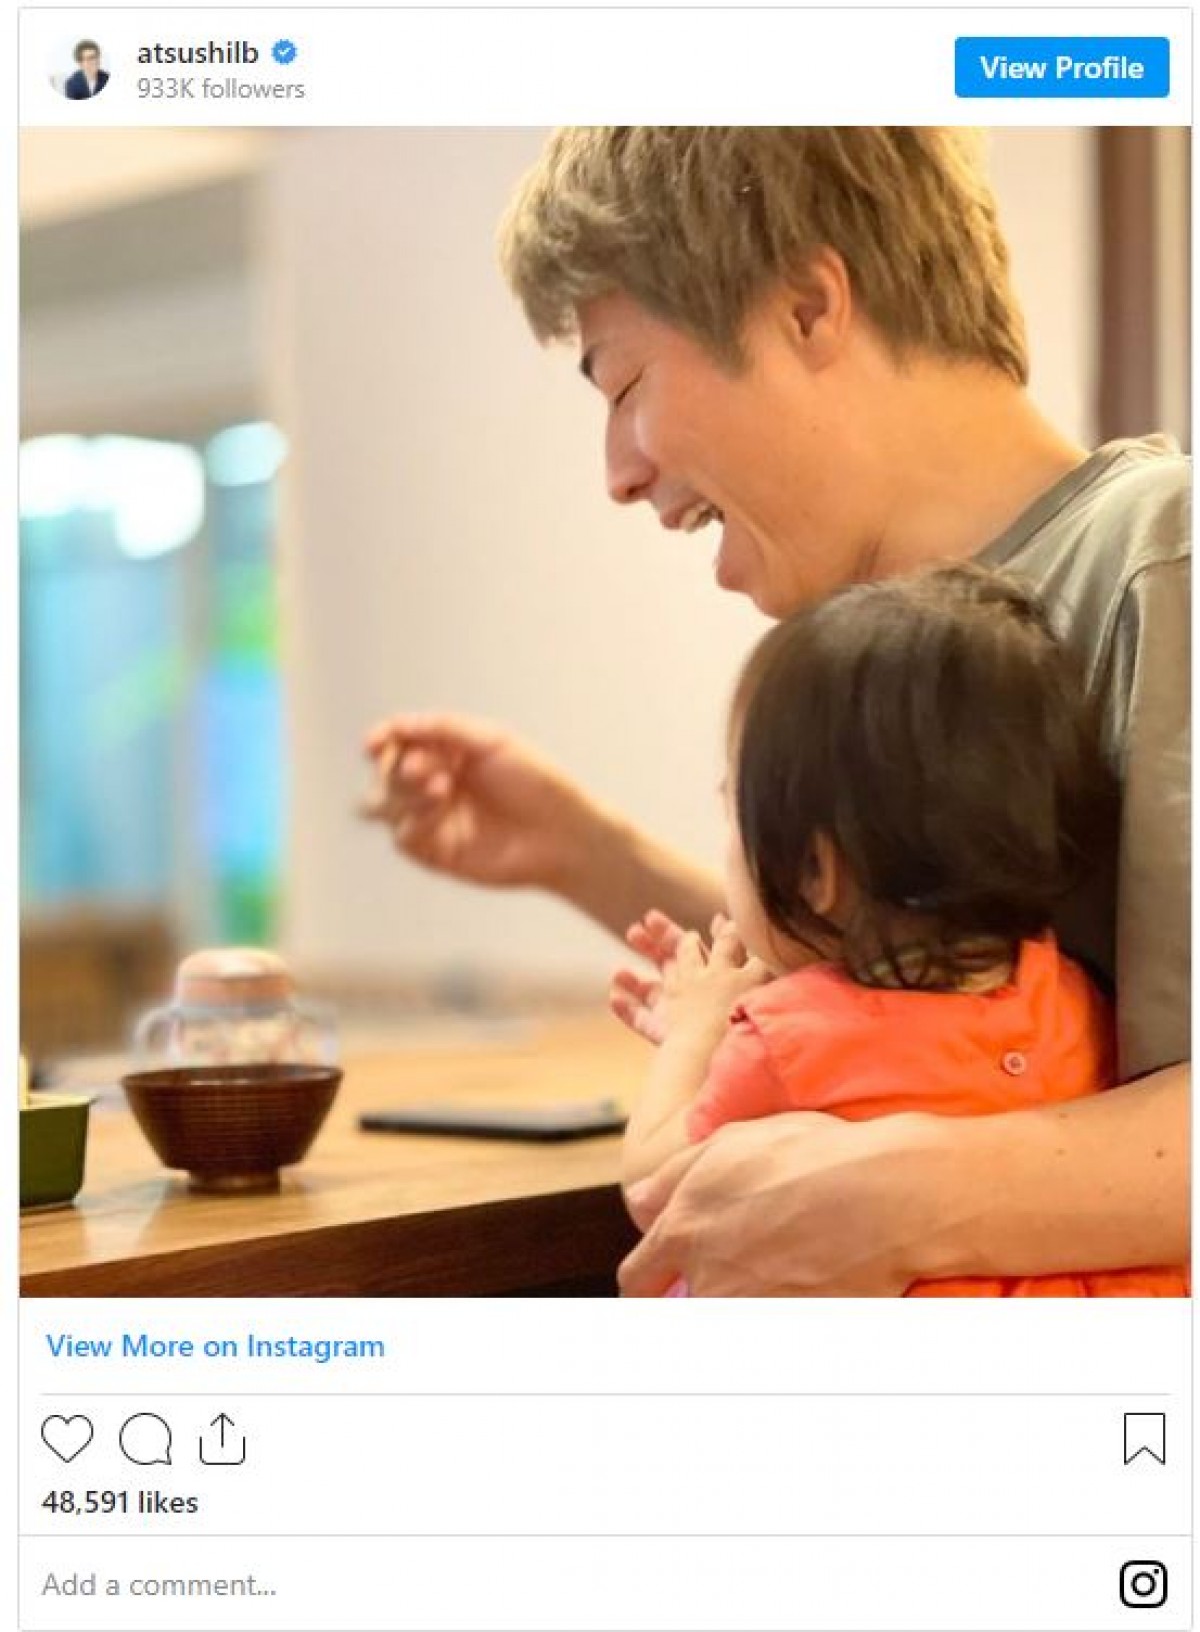 「いいお父さん」「素敵な写真」ロンブー田村淳、0歳次女にごはん食べさせる姿に反響